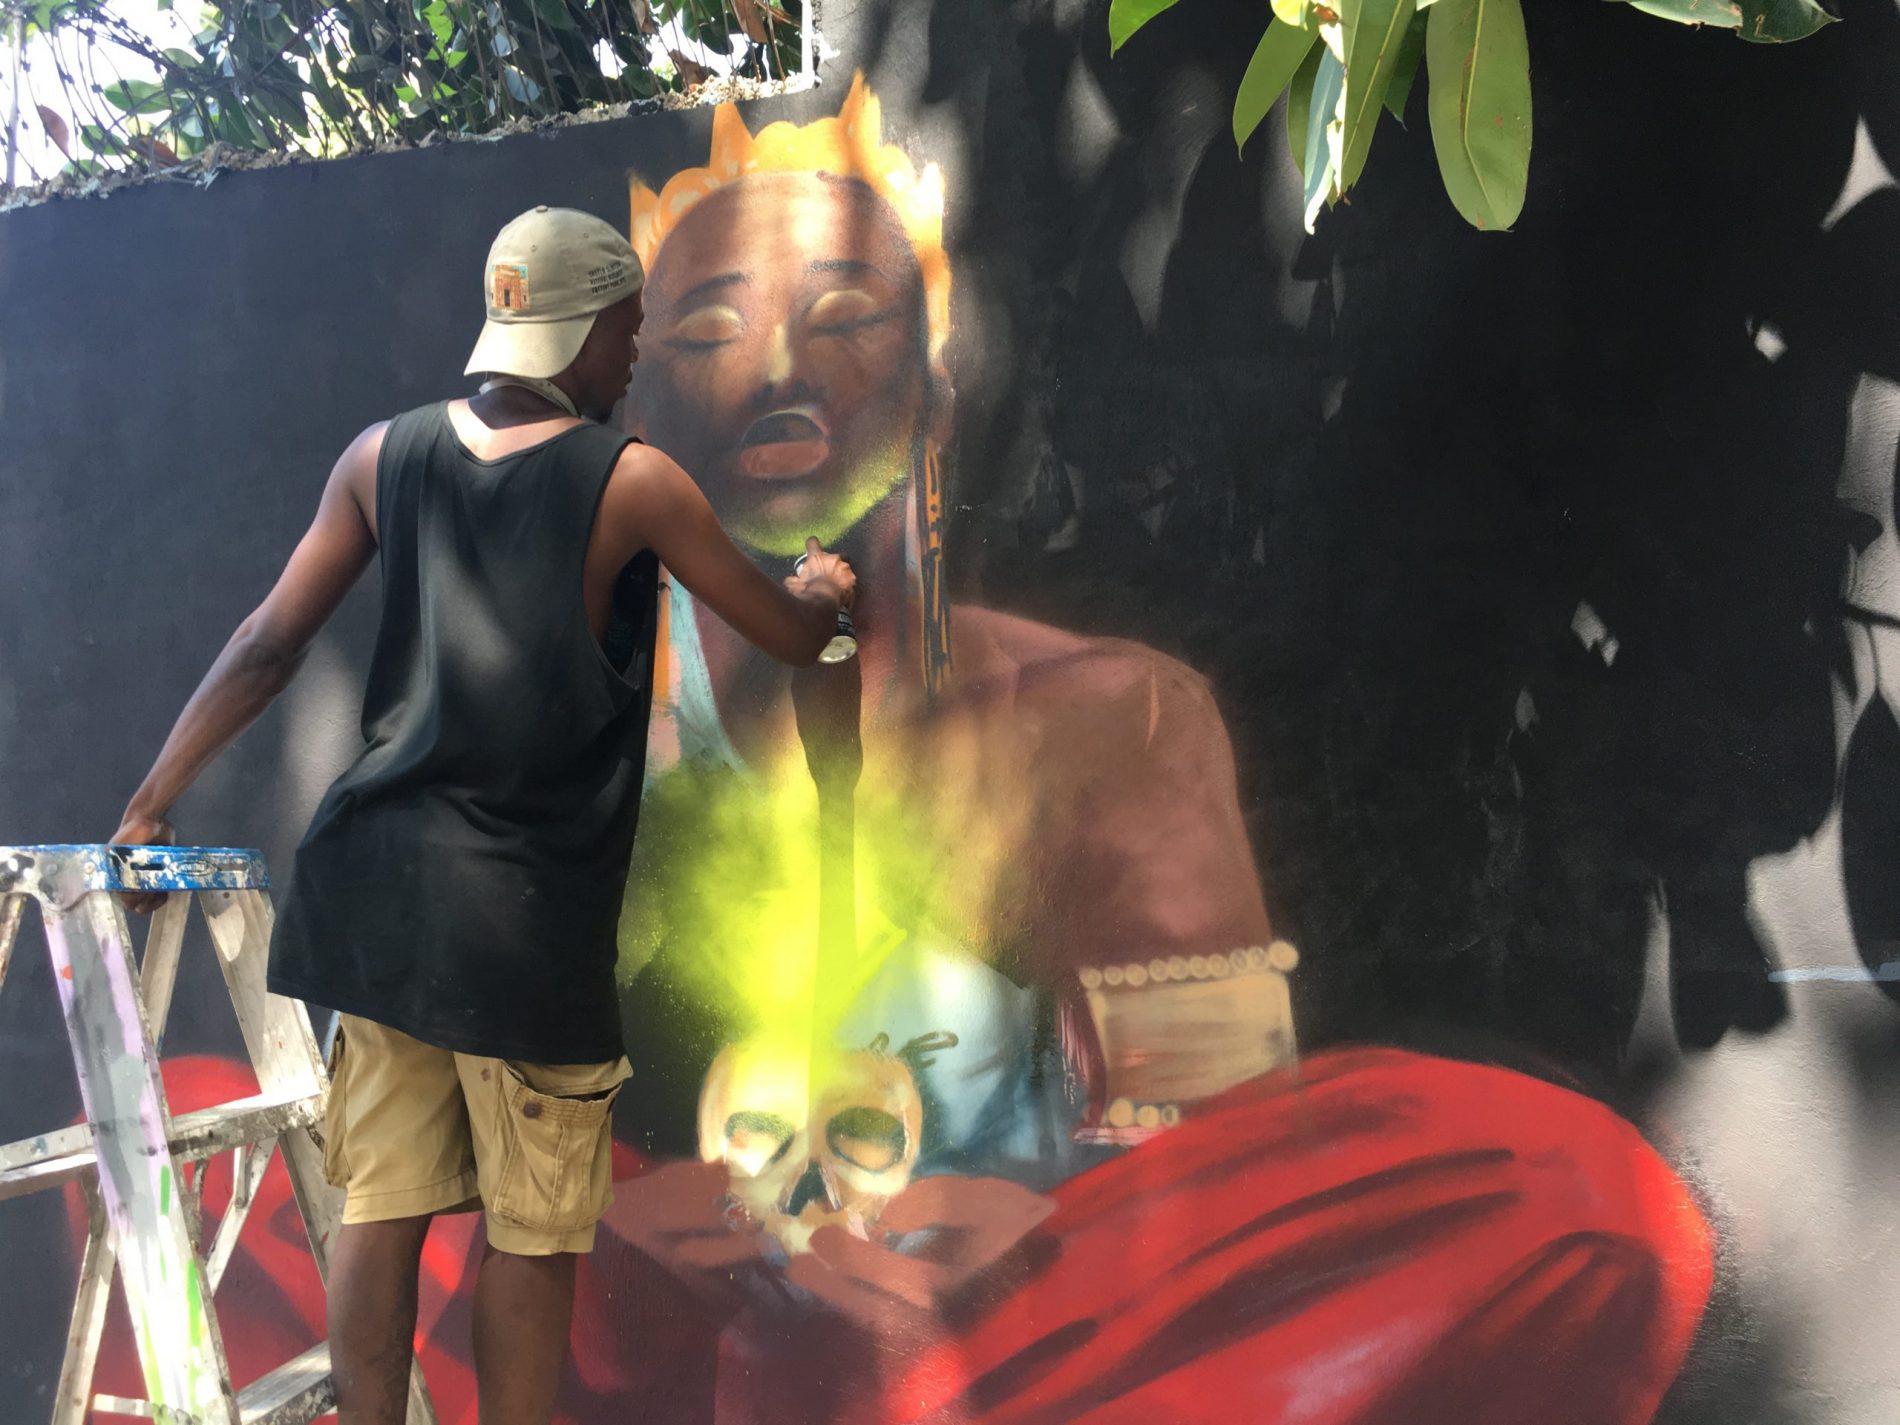 Il n’y a pas que des barricades à Port-au-Prince, le street art investit nos murs